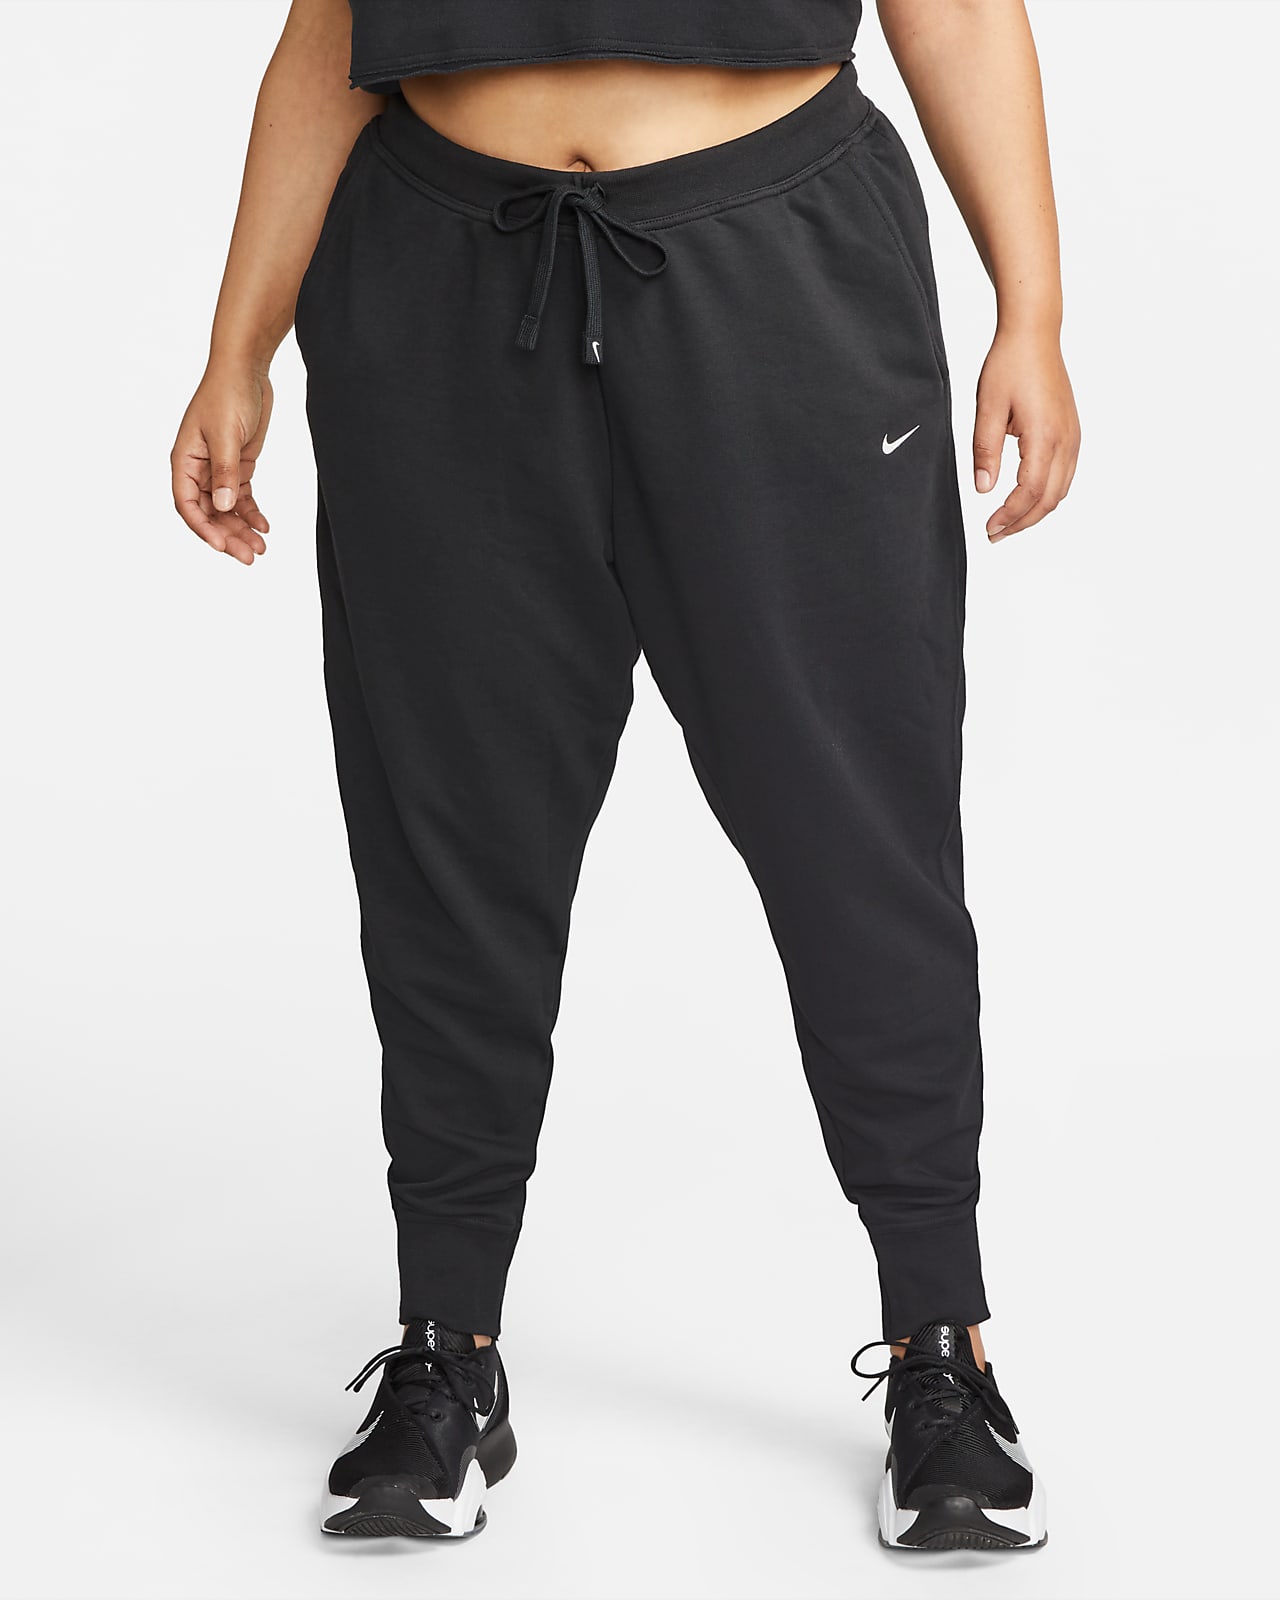 Nike Dri-FIT Get Women's Training Pants (Plus Size). Nike.com